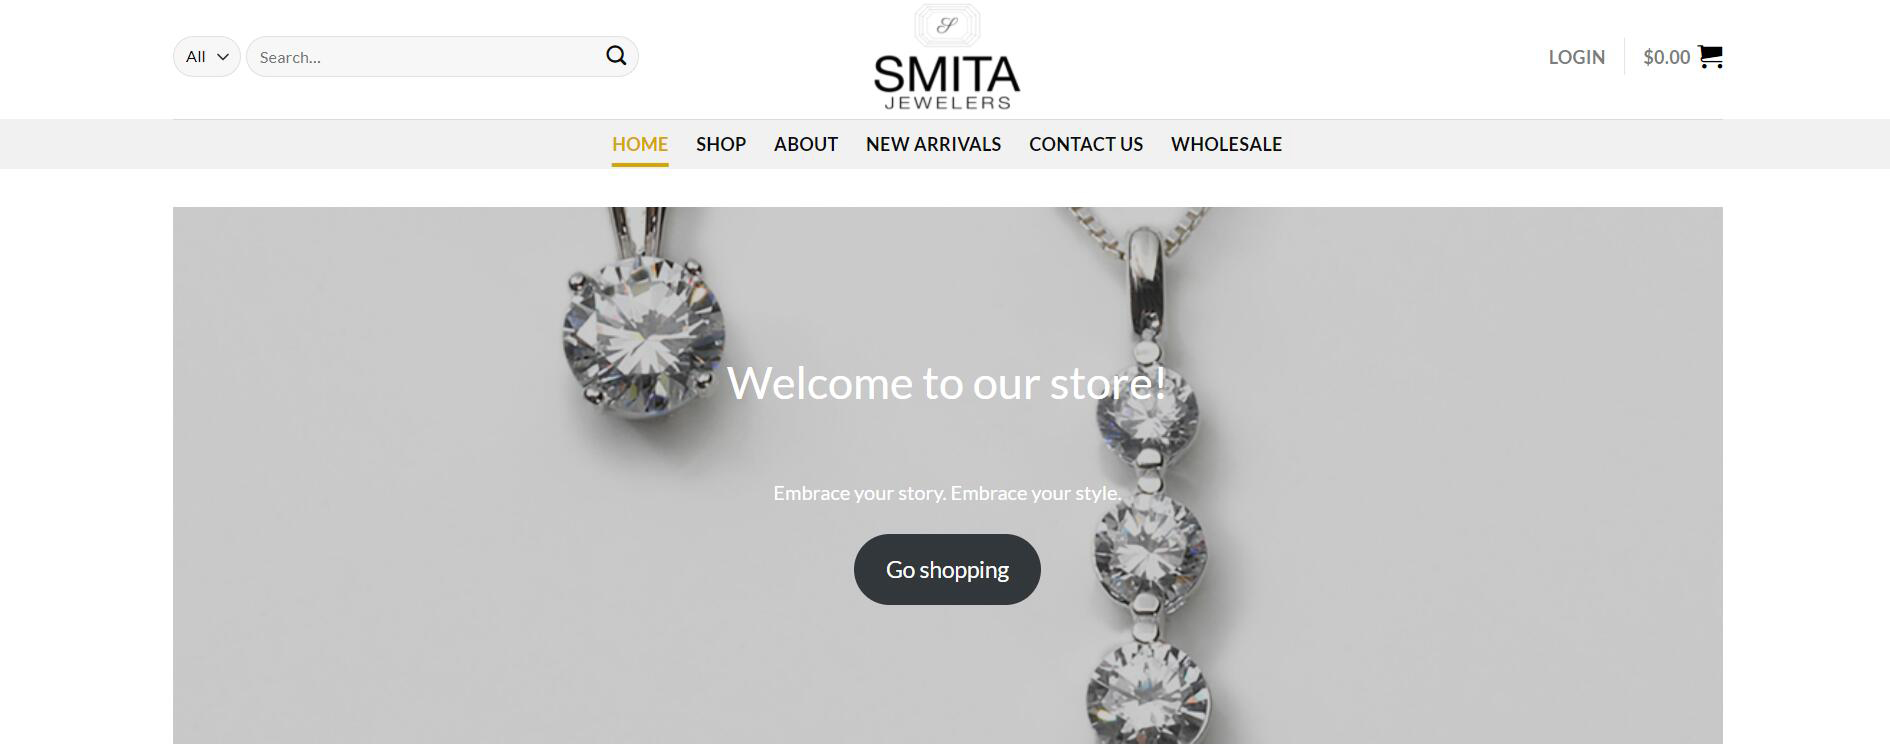 Smita Jewelers Affiliate Program